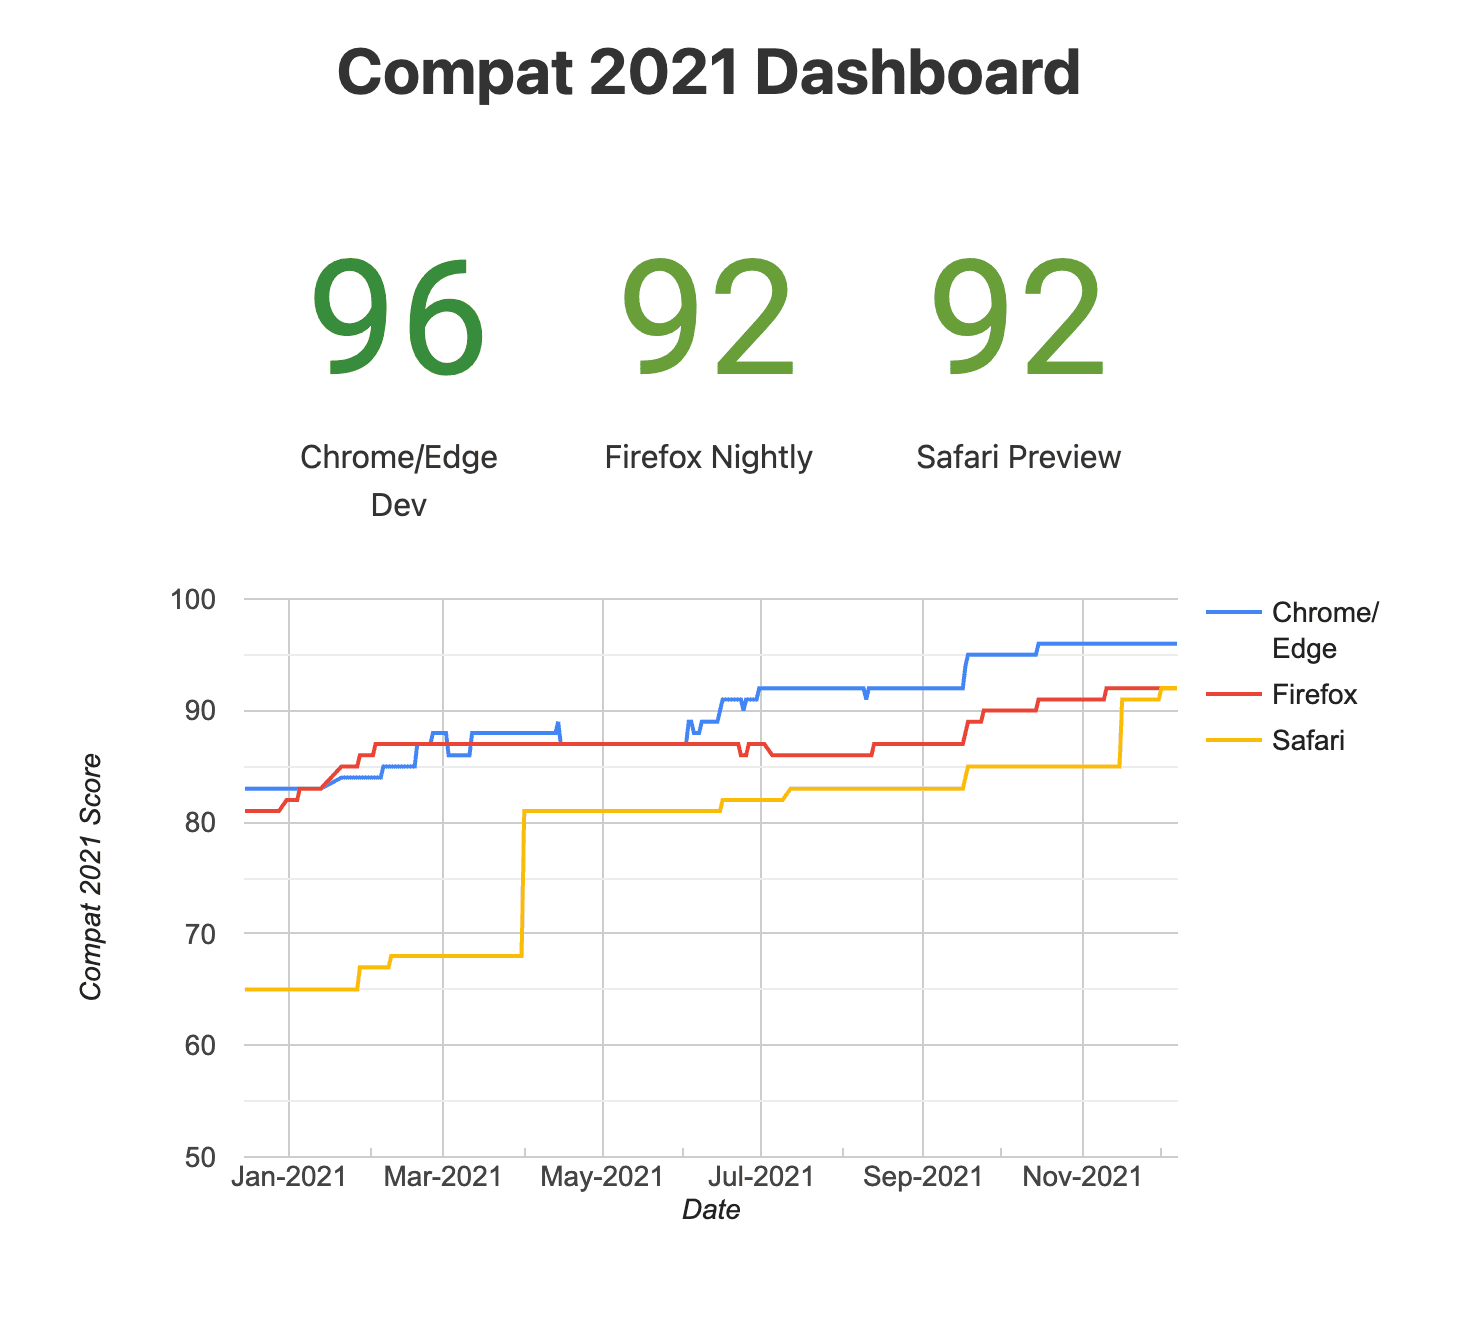 ภาพรวมของ Compat
แดชบอร์ดปี 2021 (เบราว์เซอร์ทดลอง)